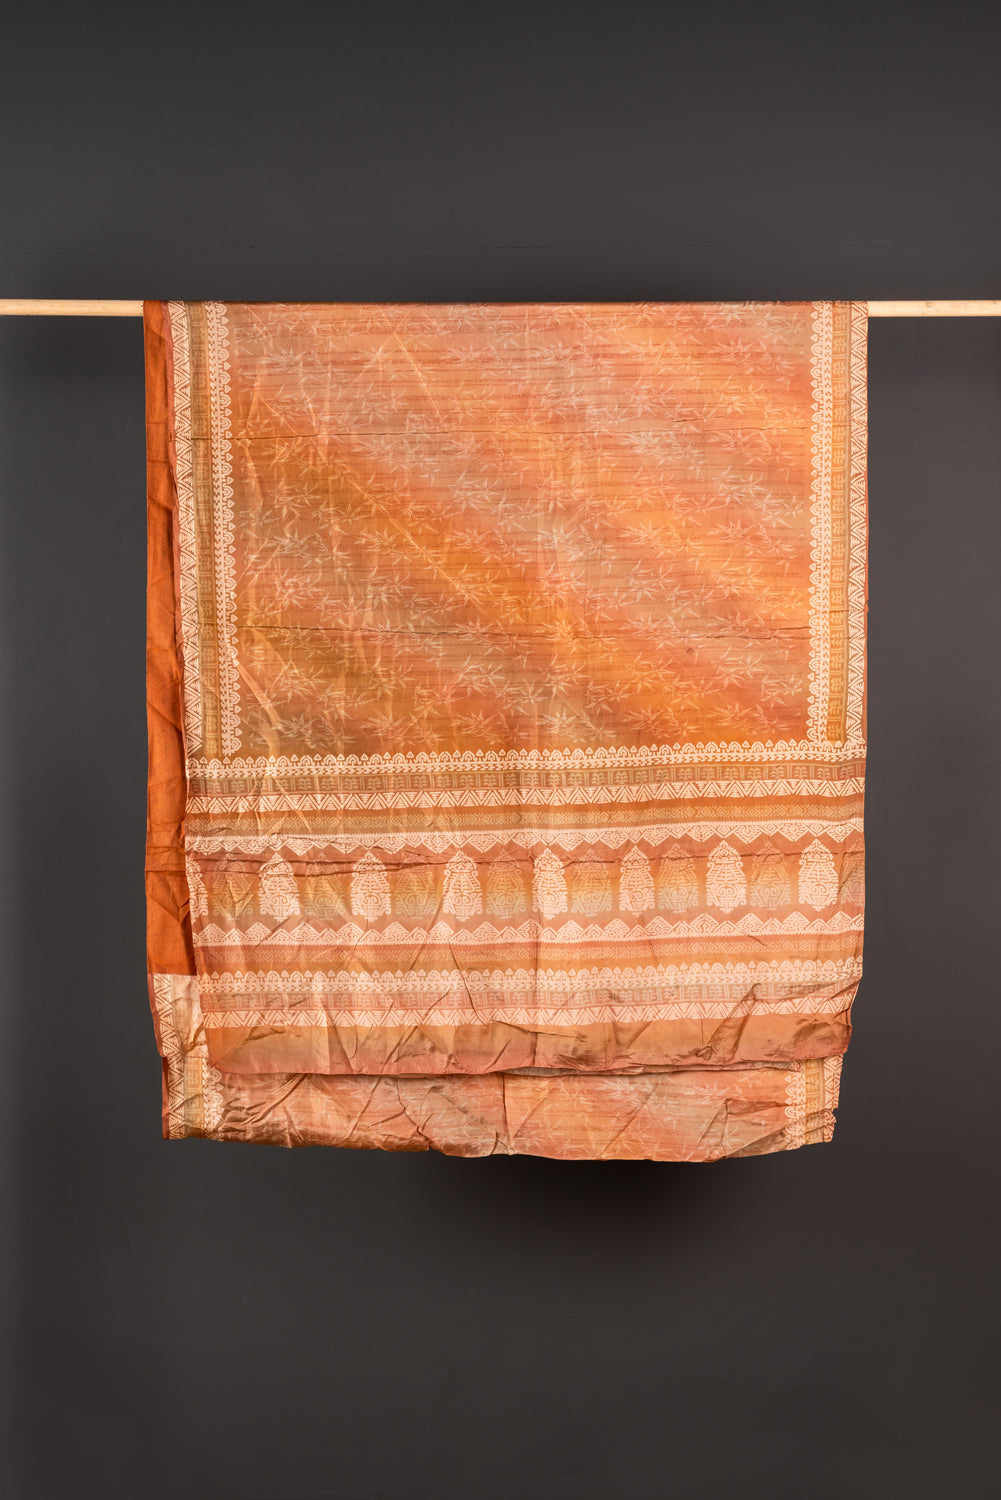 Vintage Rayon Sari - 5 Metres Long - 4458